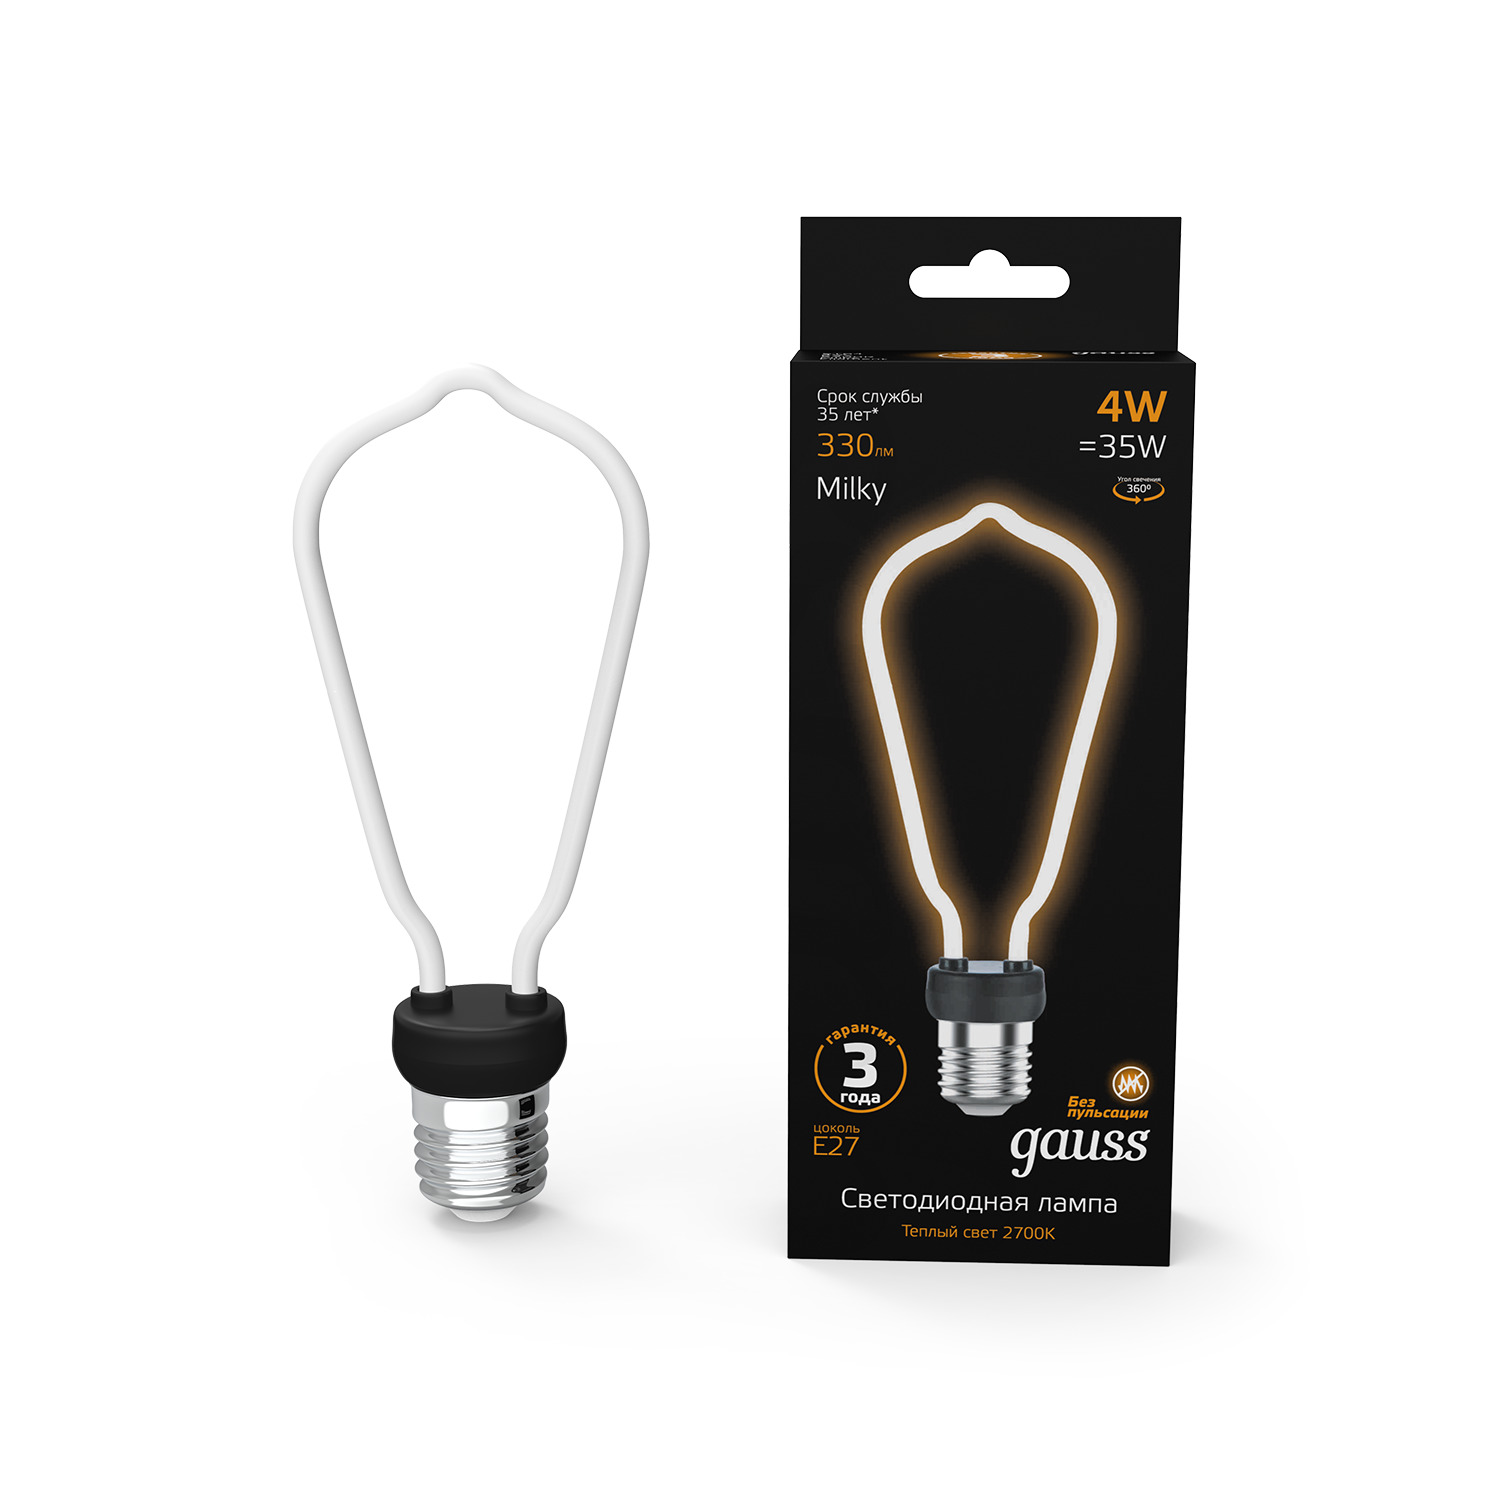 Лампа Gauss LED Filament Bulbless ST64 Milky E27 4W 330 Лм 2700K 64x165мм цена и фото